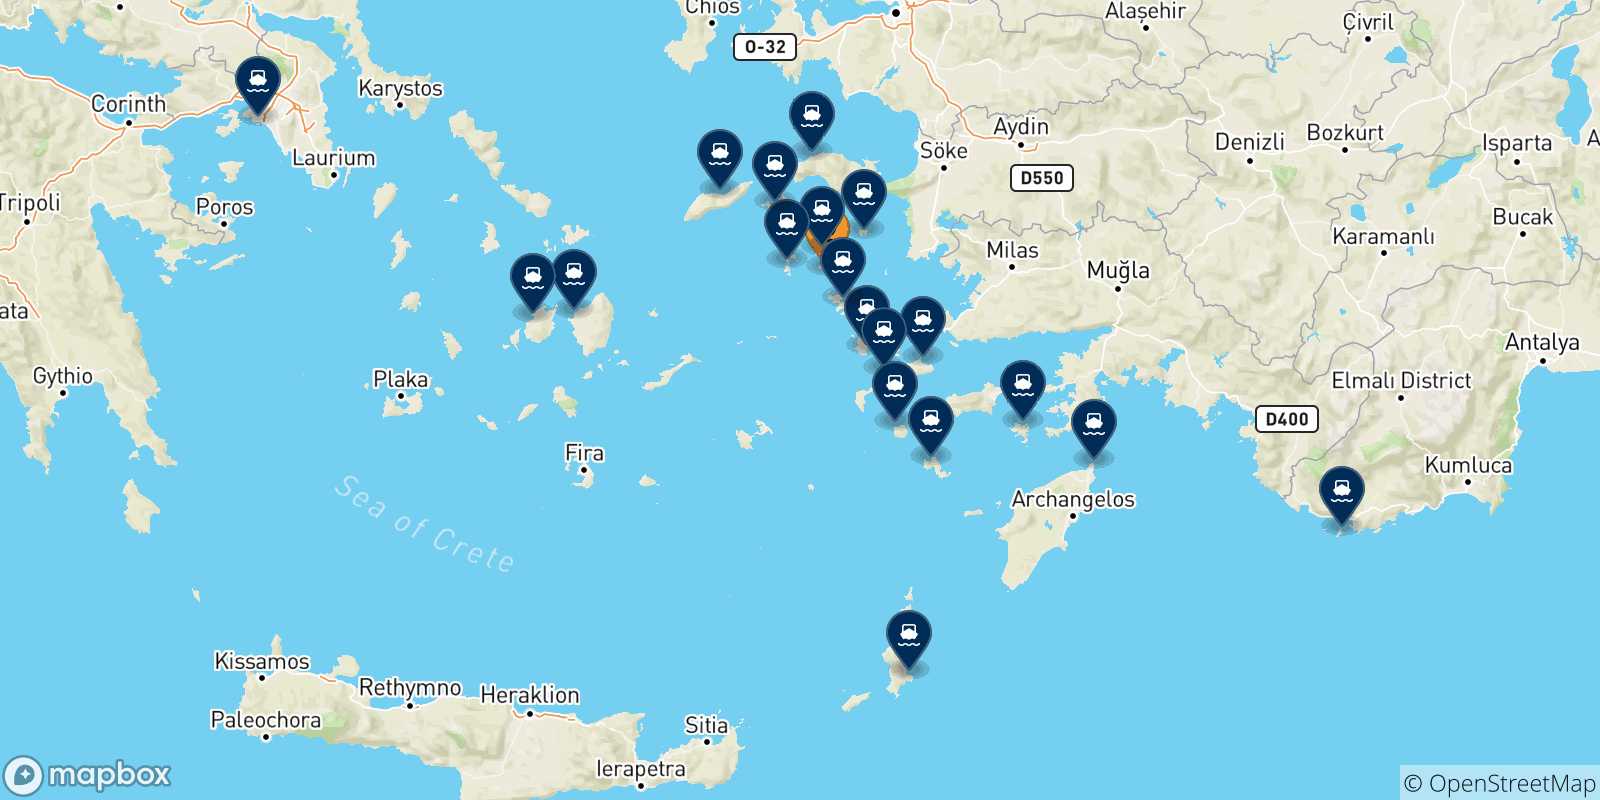 Mappa delle possibili rotte tra Lipsi e la Grecia